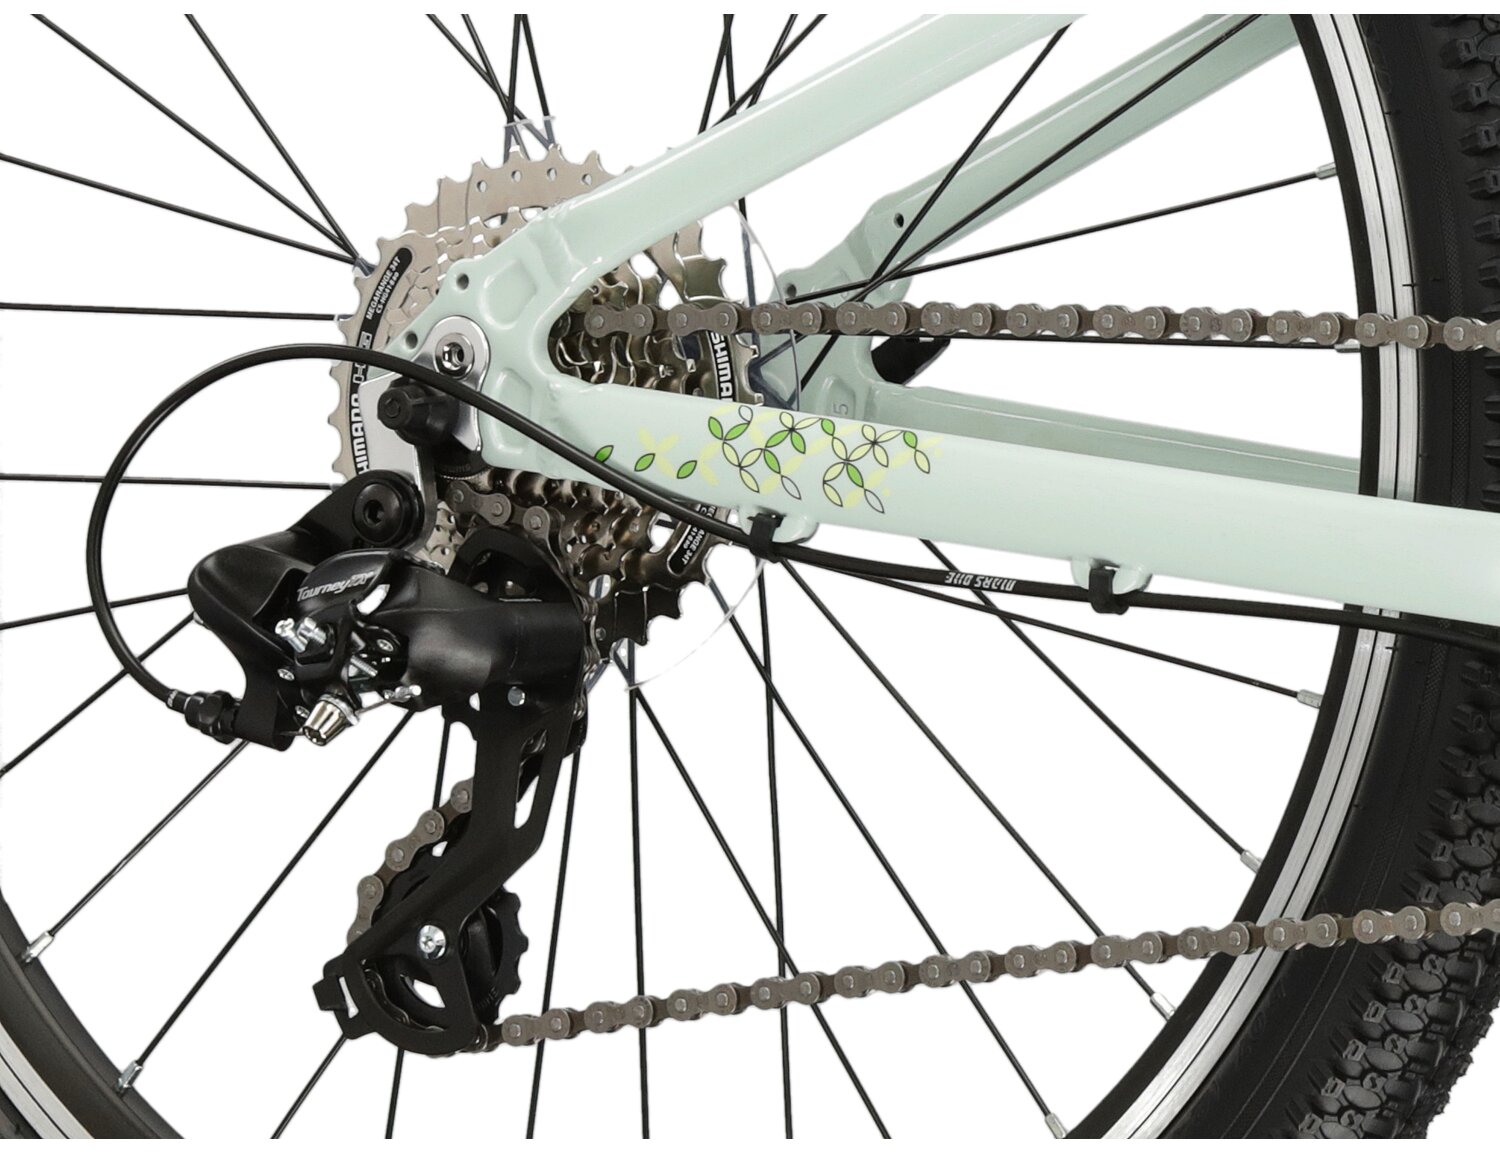  Tylna ośmiorzędowa przerzutka SHIMANO TOURNEY TX800 oraz hamulce v-brake w rowerze juniorskim dziewczęcym górskim Kross Lea JR 1.0 